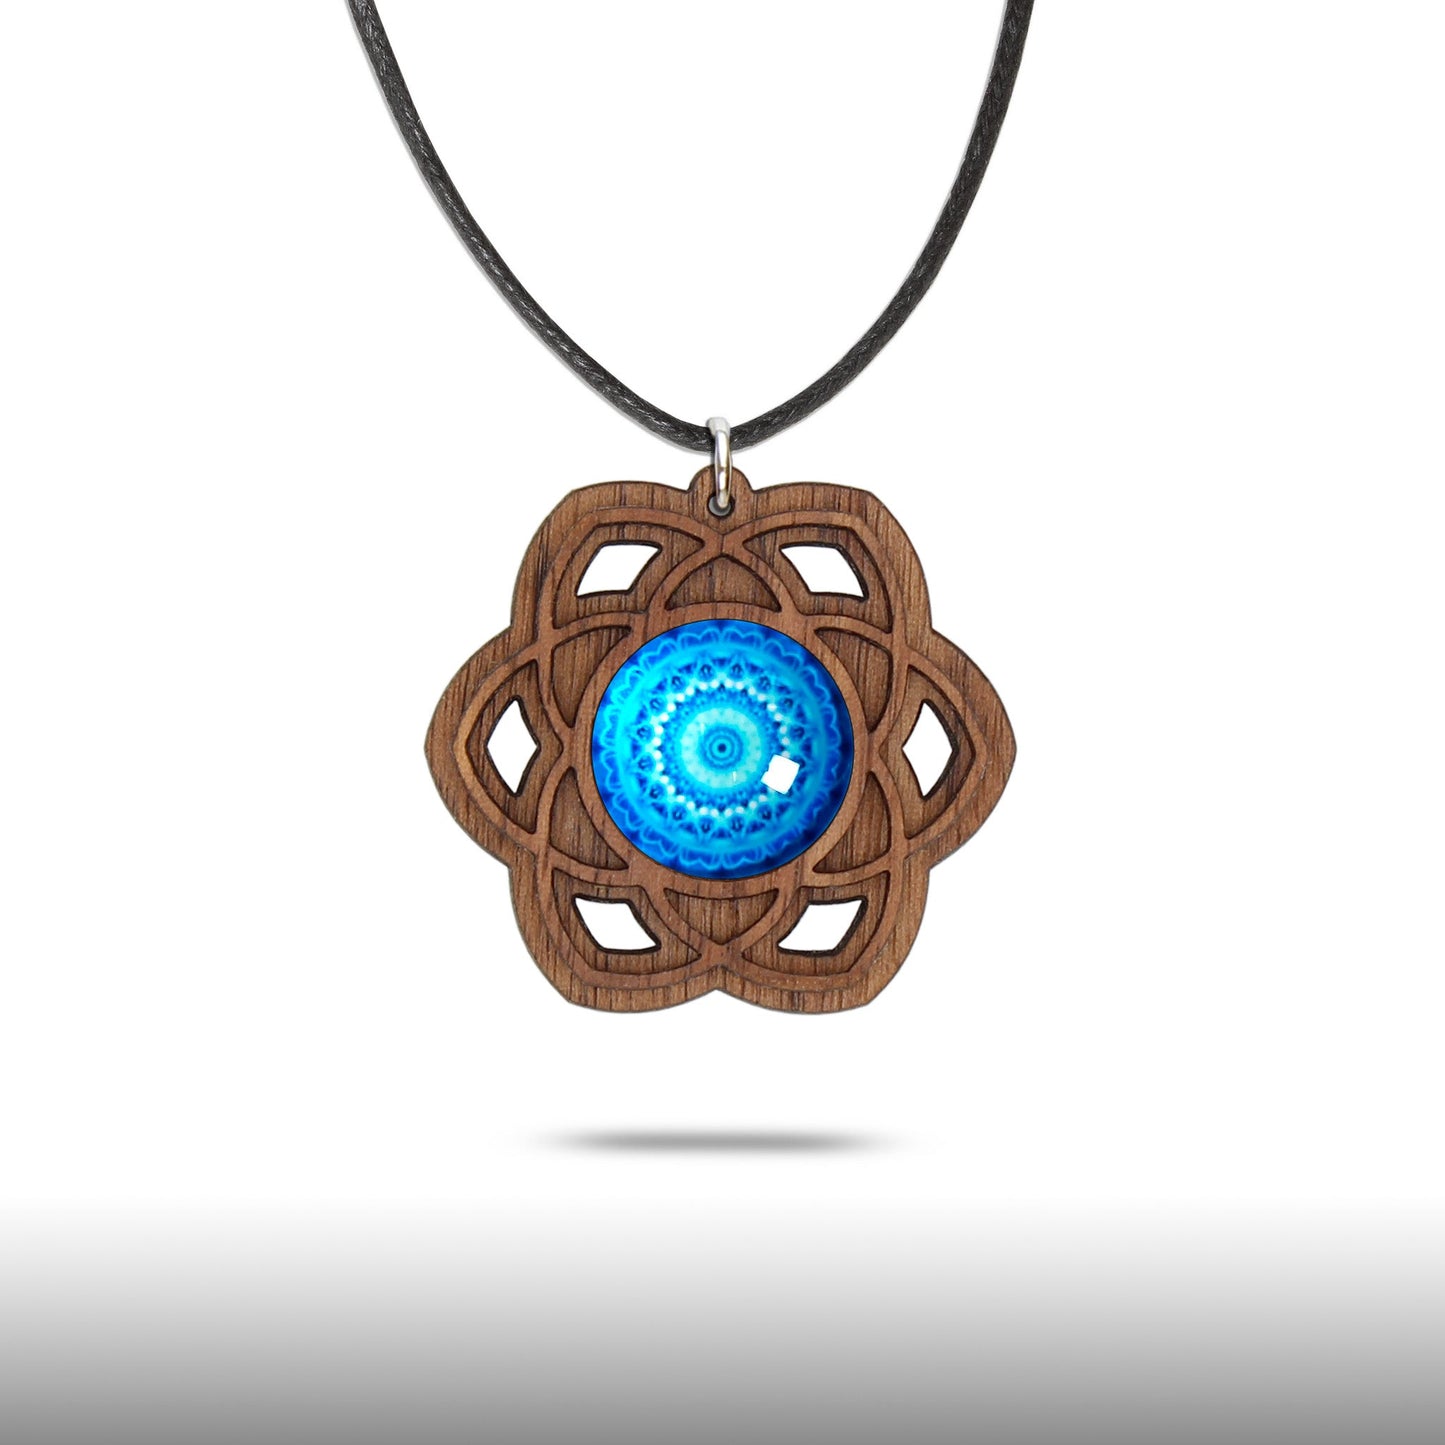 Halskette Mandala "Saturn" groß aus Holz mit Glasstein - Nanino Design Onlineshop -